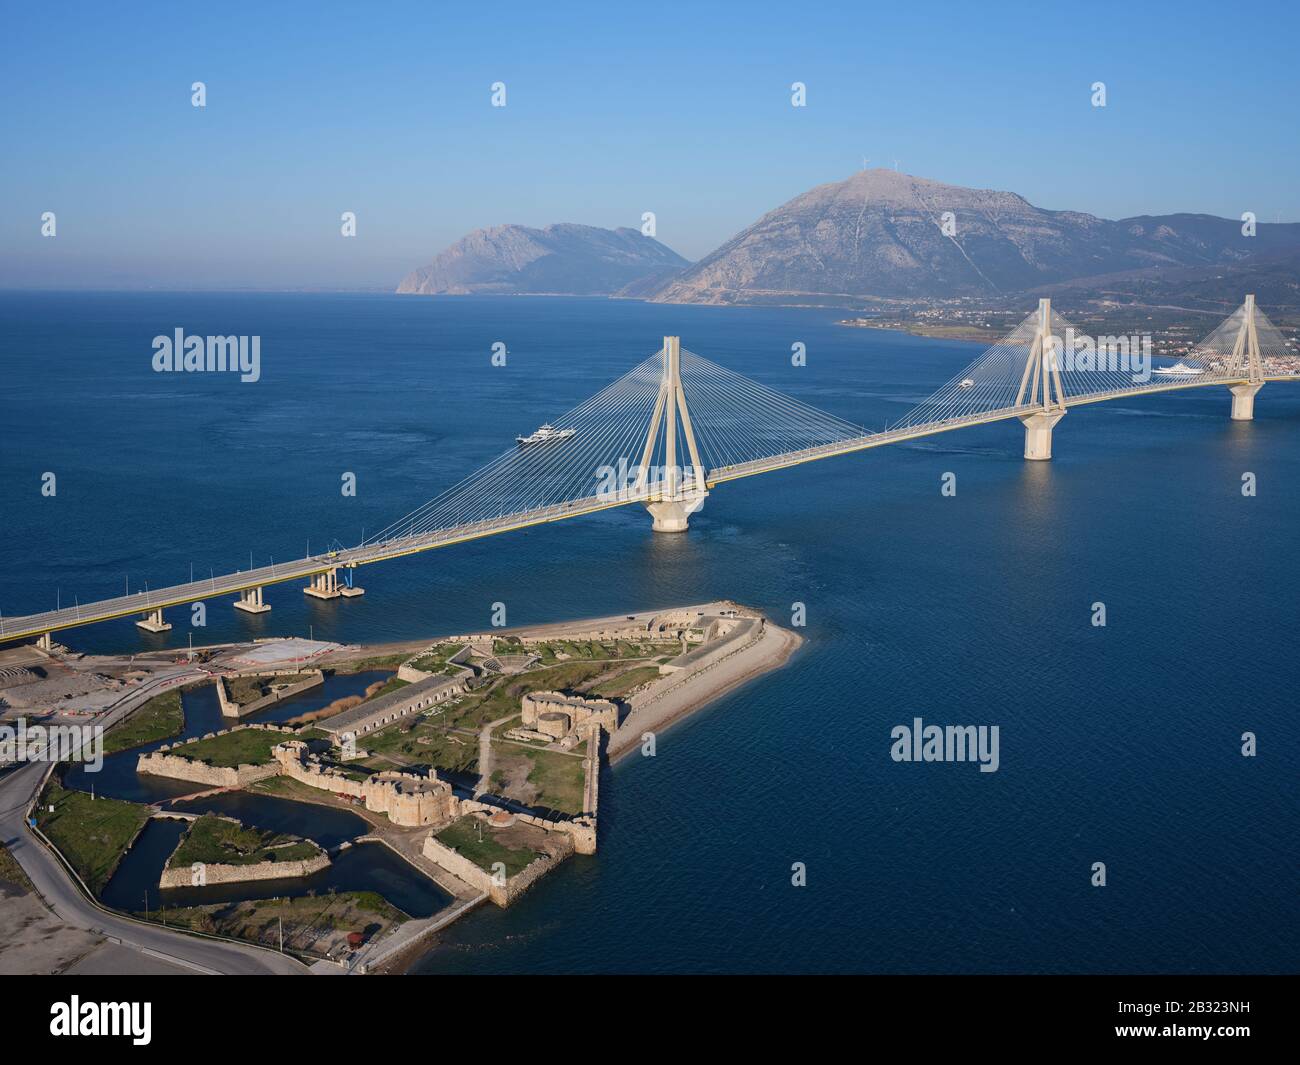 LUFTAUFNAHME. Große Hängebrücke mit Kabelgestelle, die den engsten Teil des Golfs von Korinth überquert. Zwischen den Städten Rio und Antirrio, Griechenland. Stockfoto